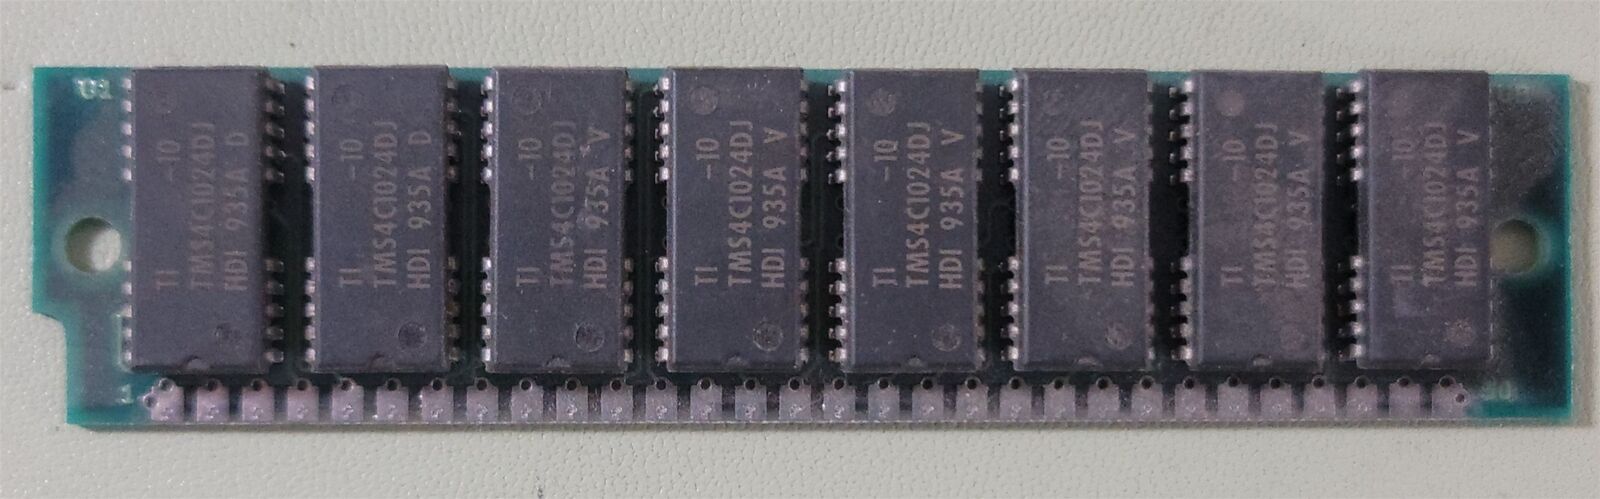 Texas Instruments TWI95018 TMS4C1024DJ SIMM RAM , 30-Pin